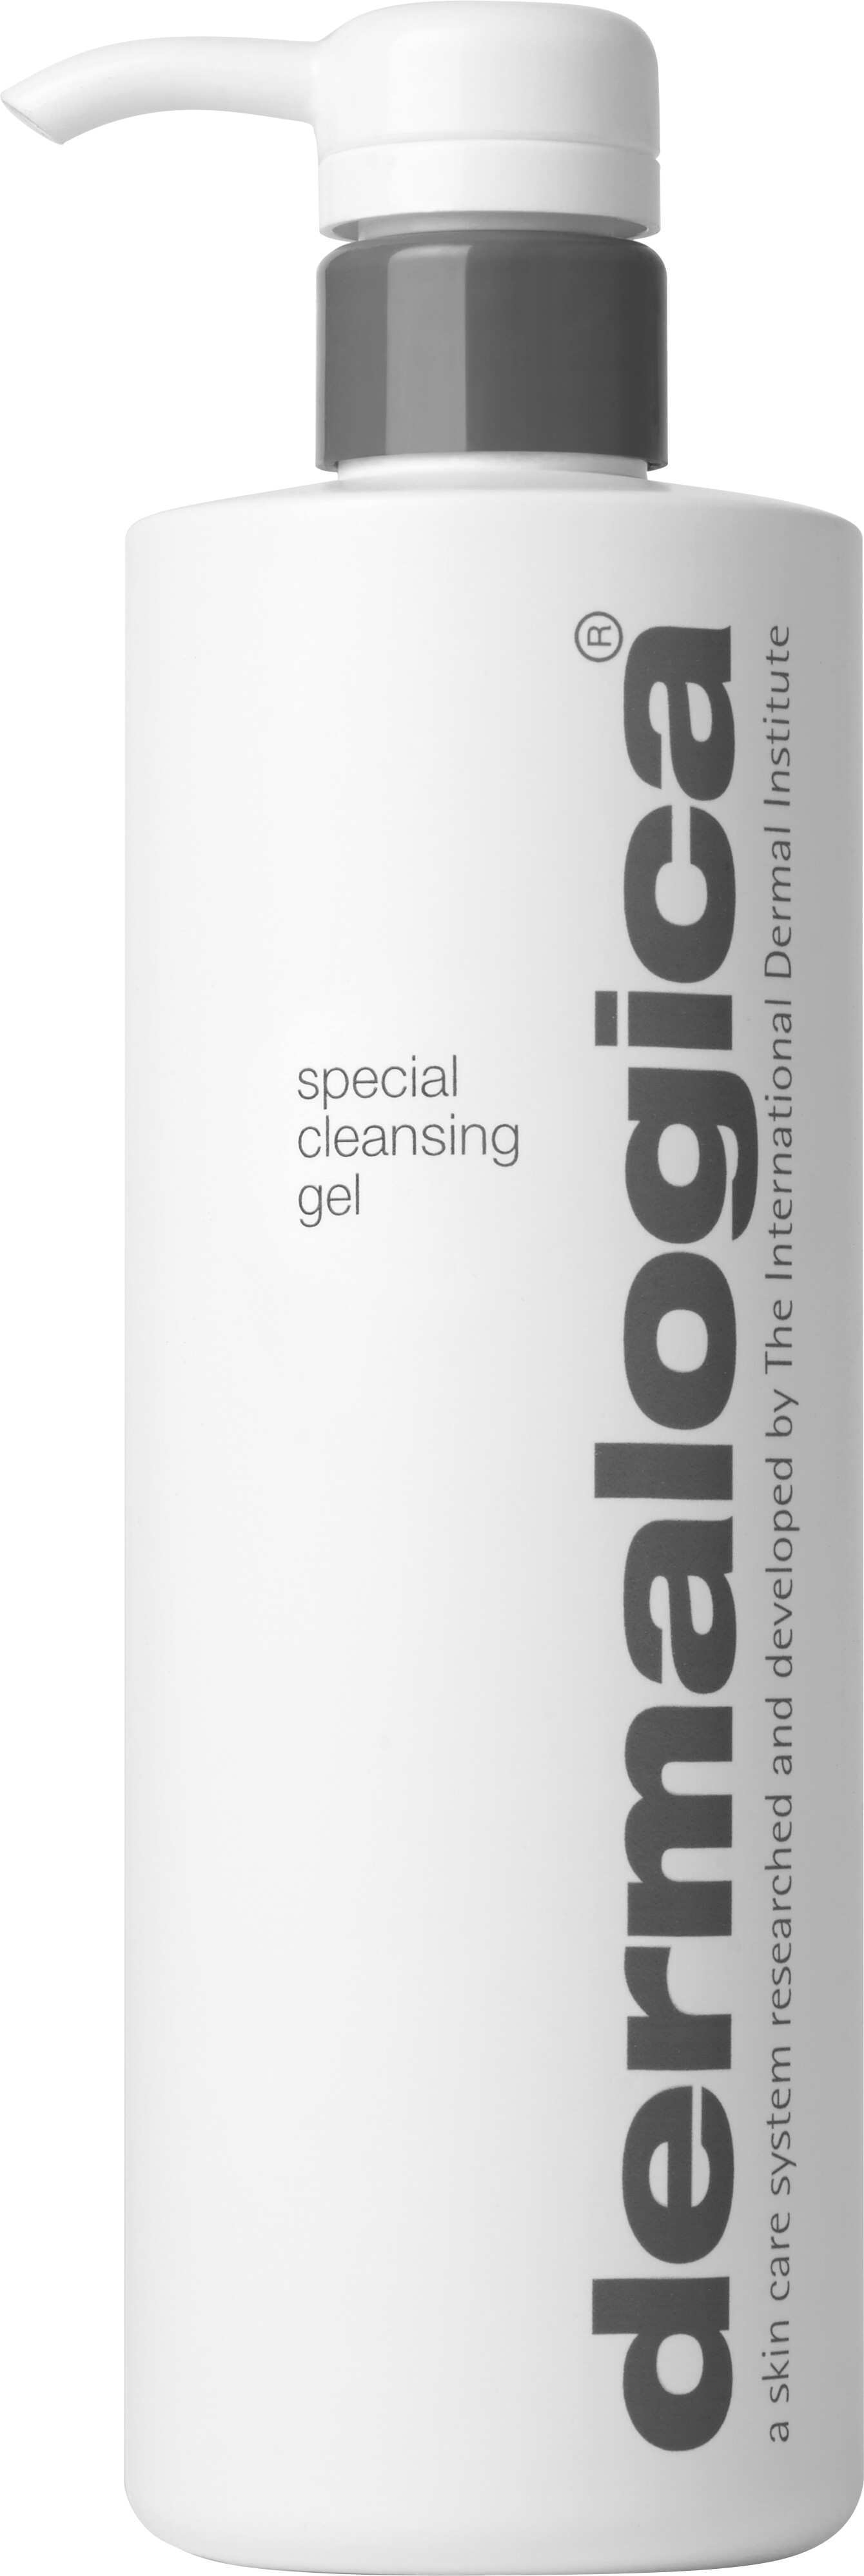 Dermalogica Special Cleansing Gel 500ml